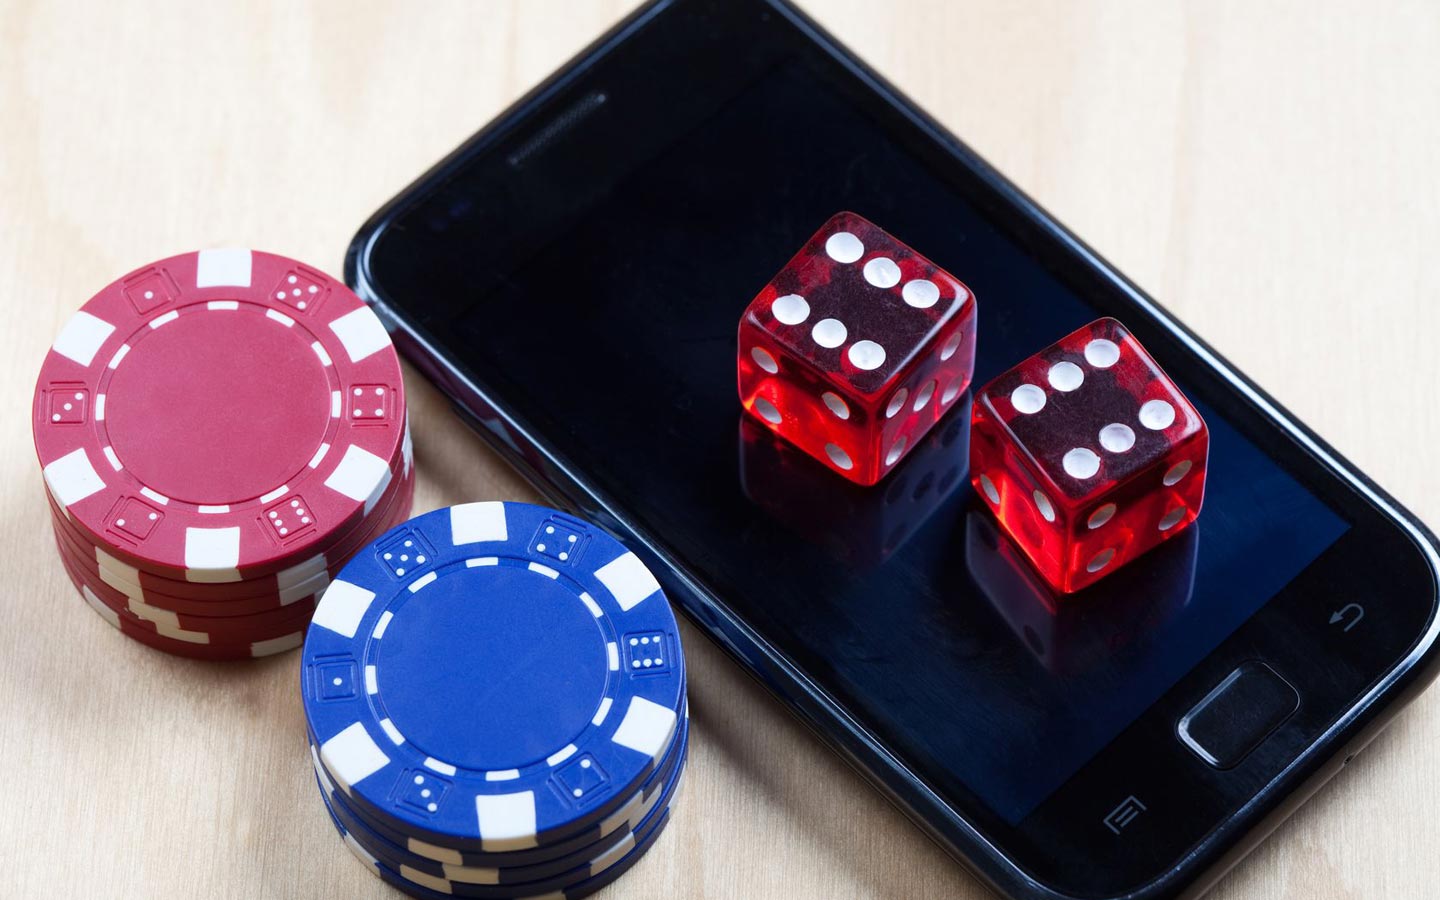 Mobile casino gaming. Мобильное казино. Казино для мобильного телефона. Мобильные азартные игры. Казино для сотового телефона.